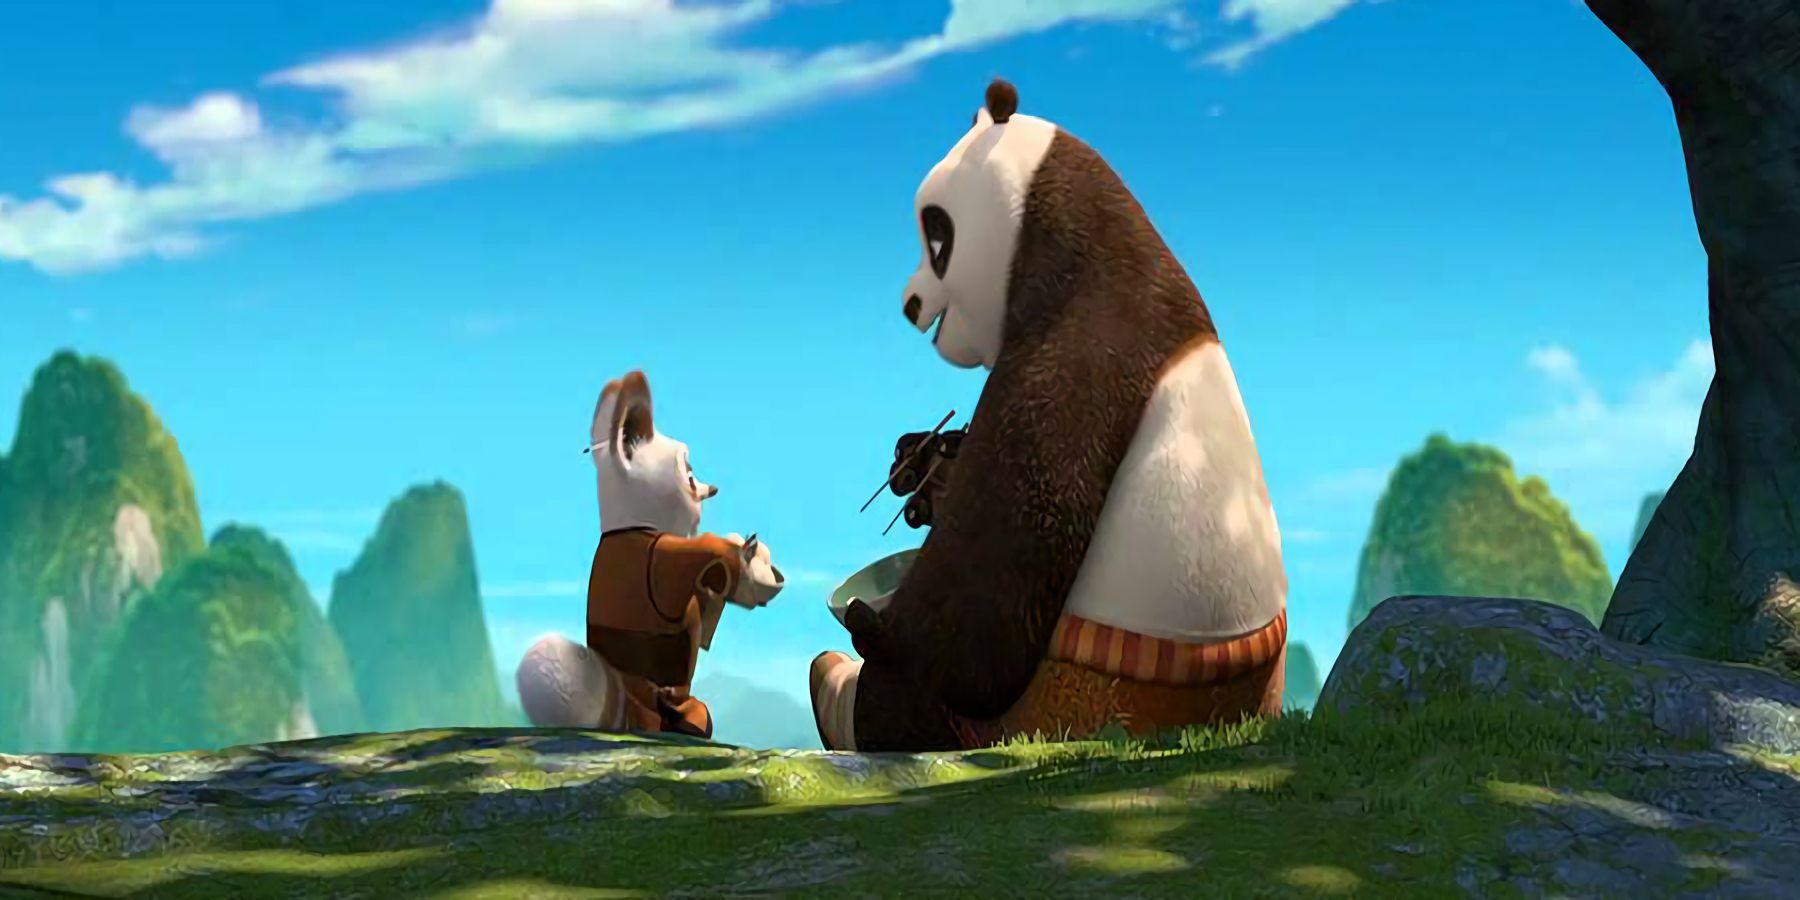 Kung Fu Panda post credits scene